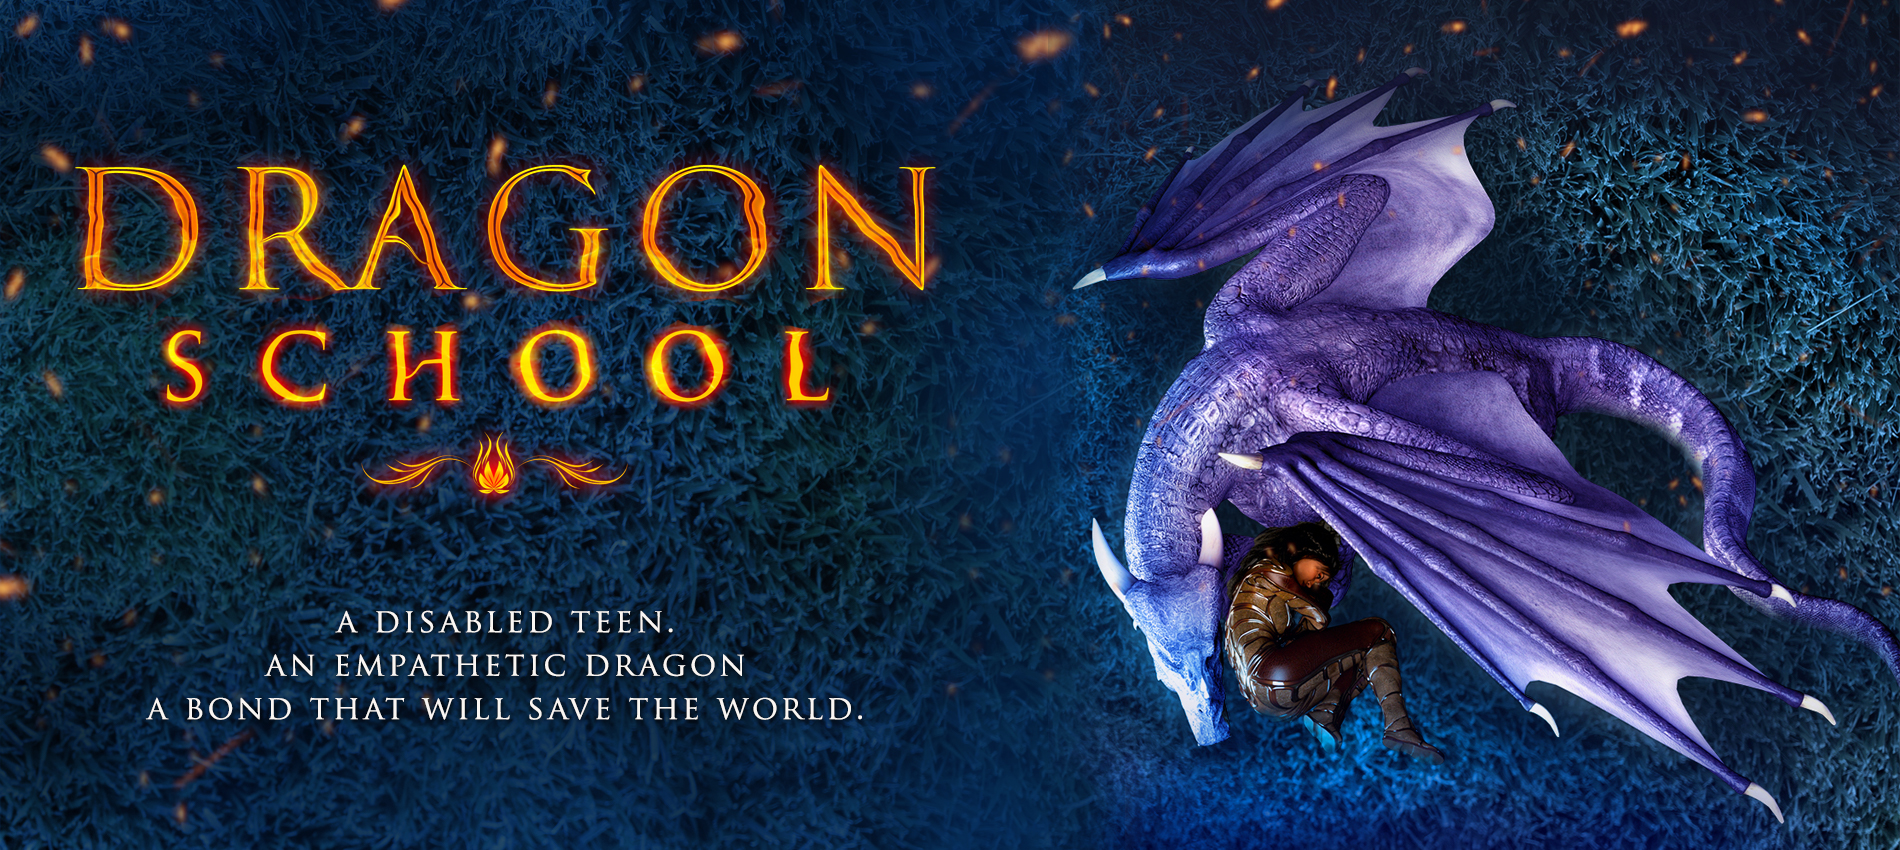 Dragon Schoool Series by Sarah K. L. Wilson